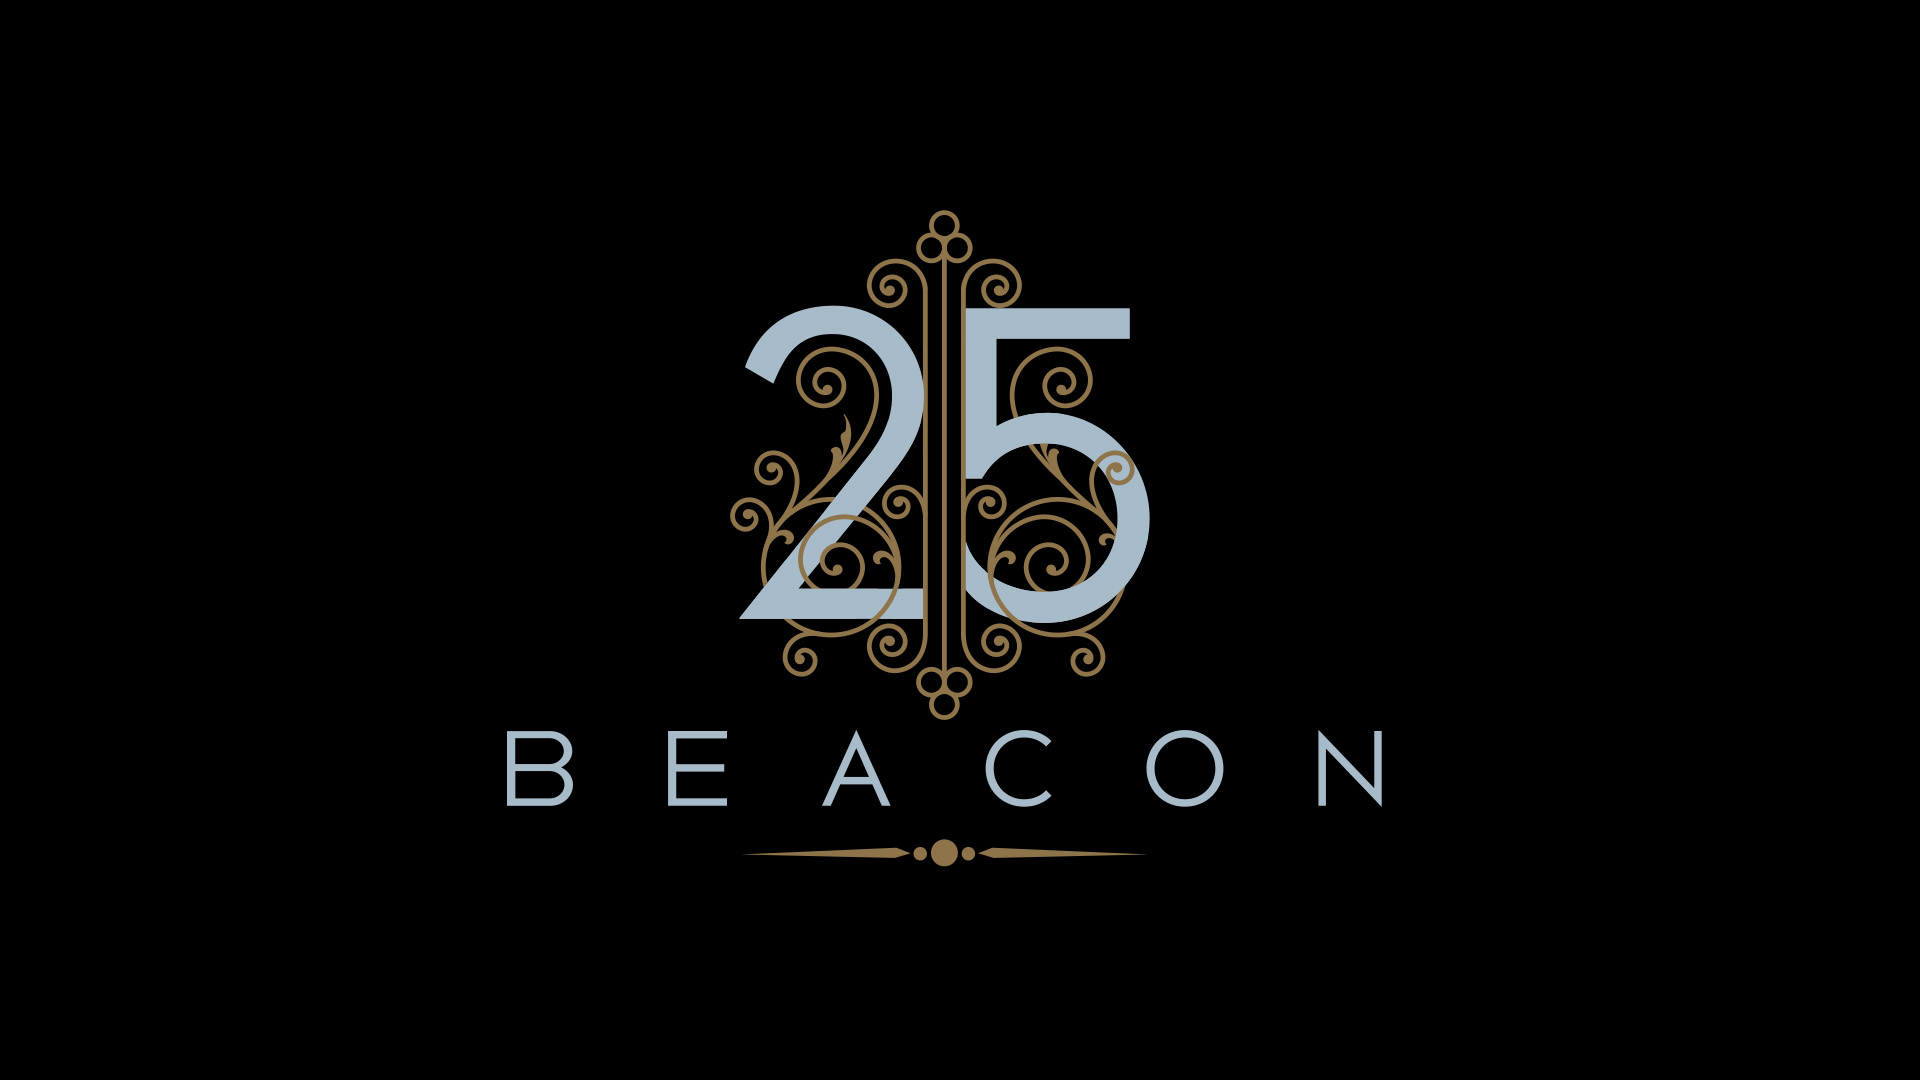 25 Beacon logo on black